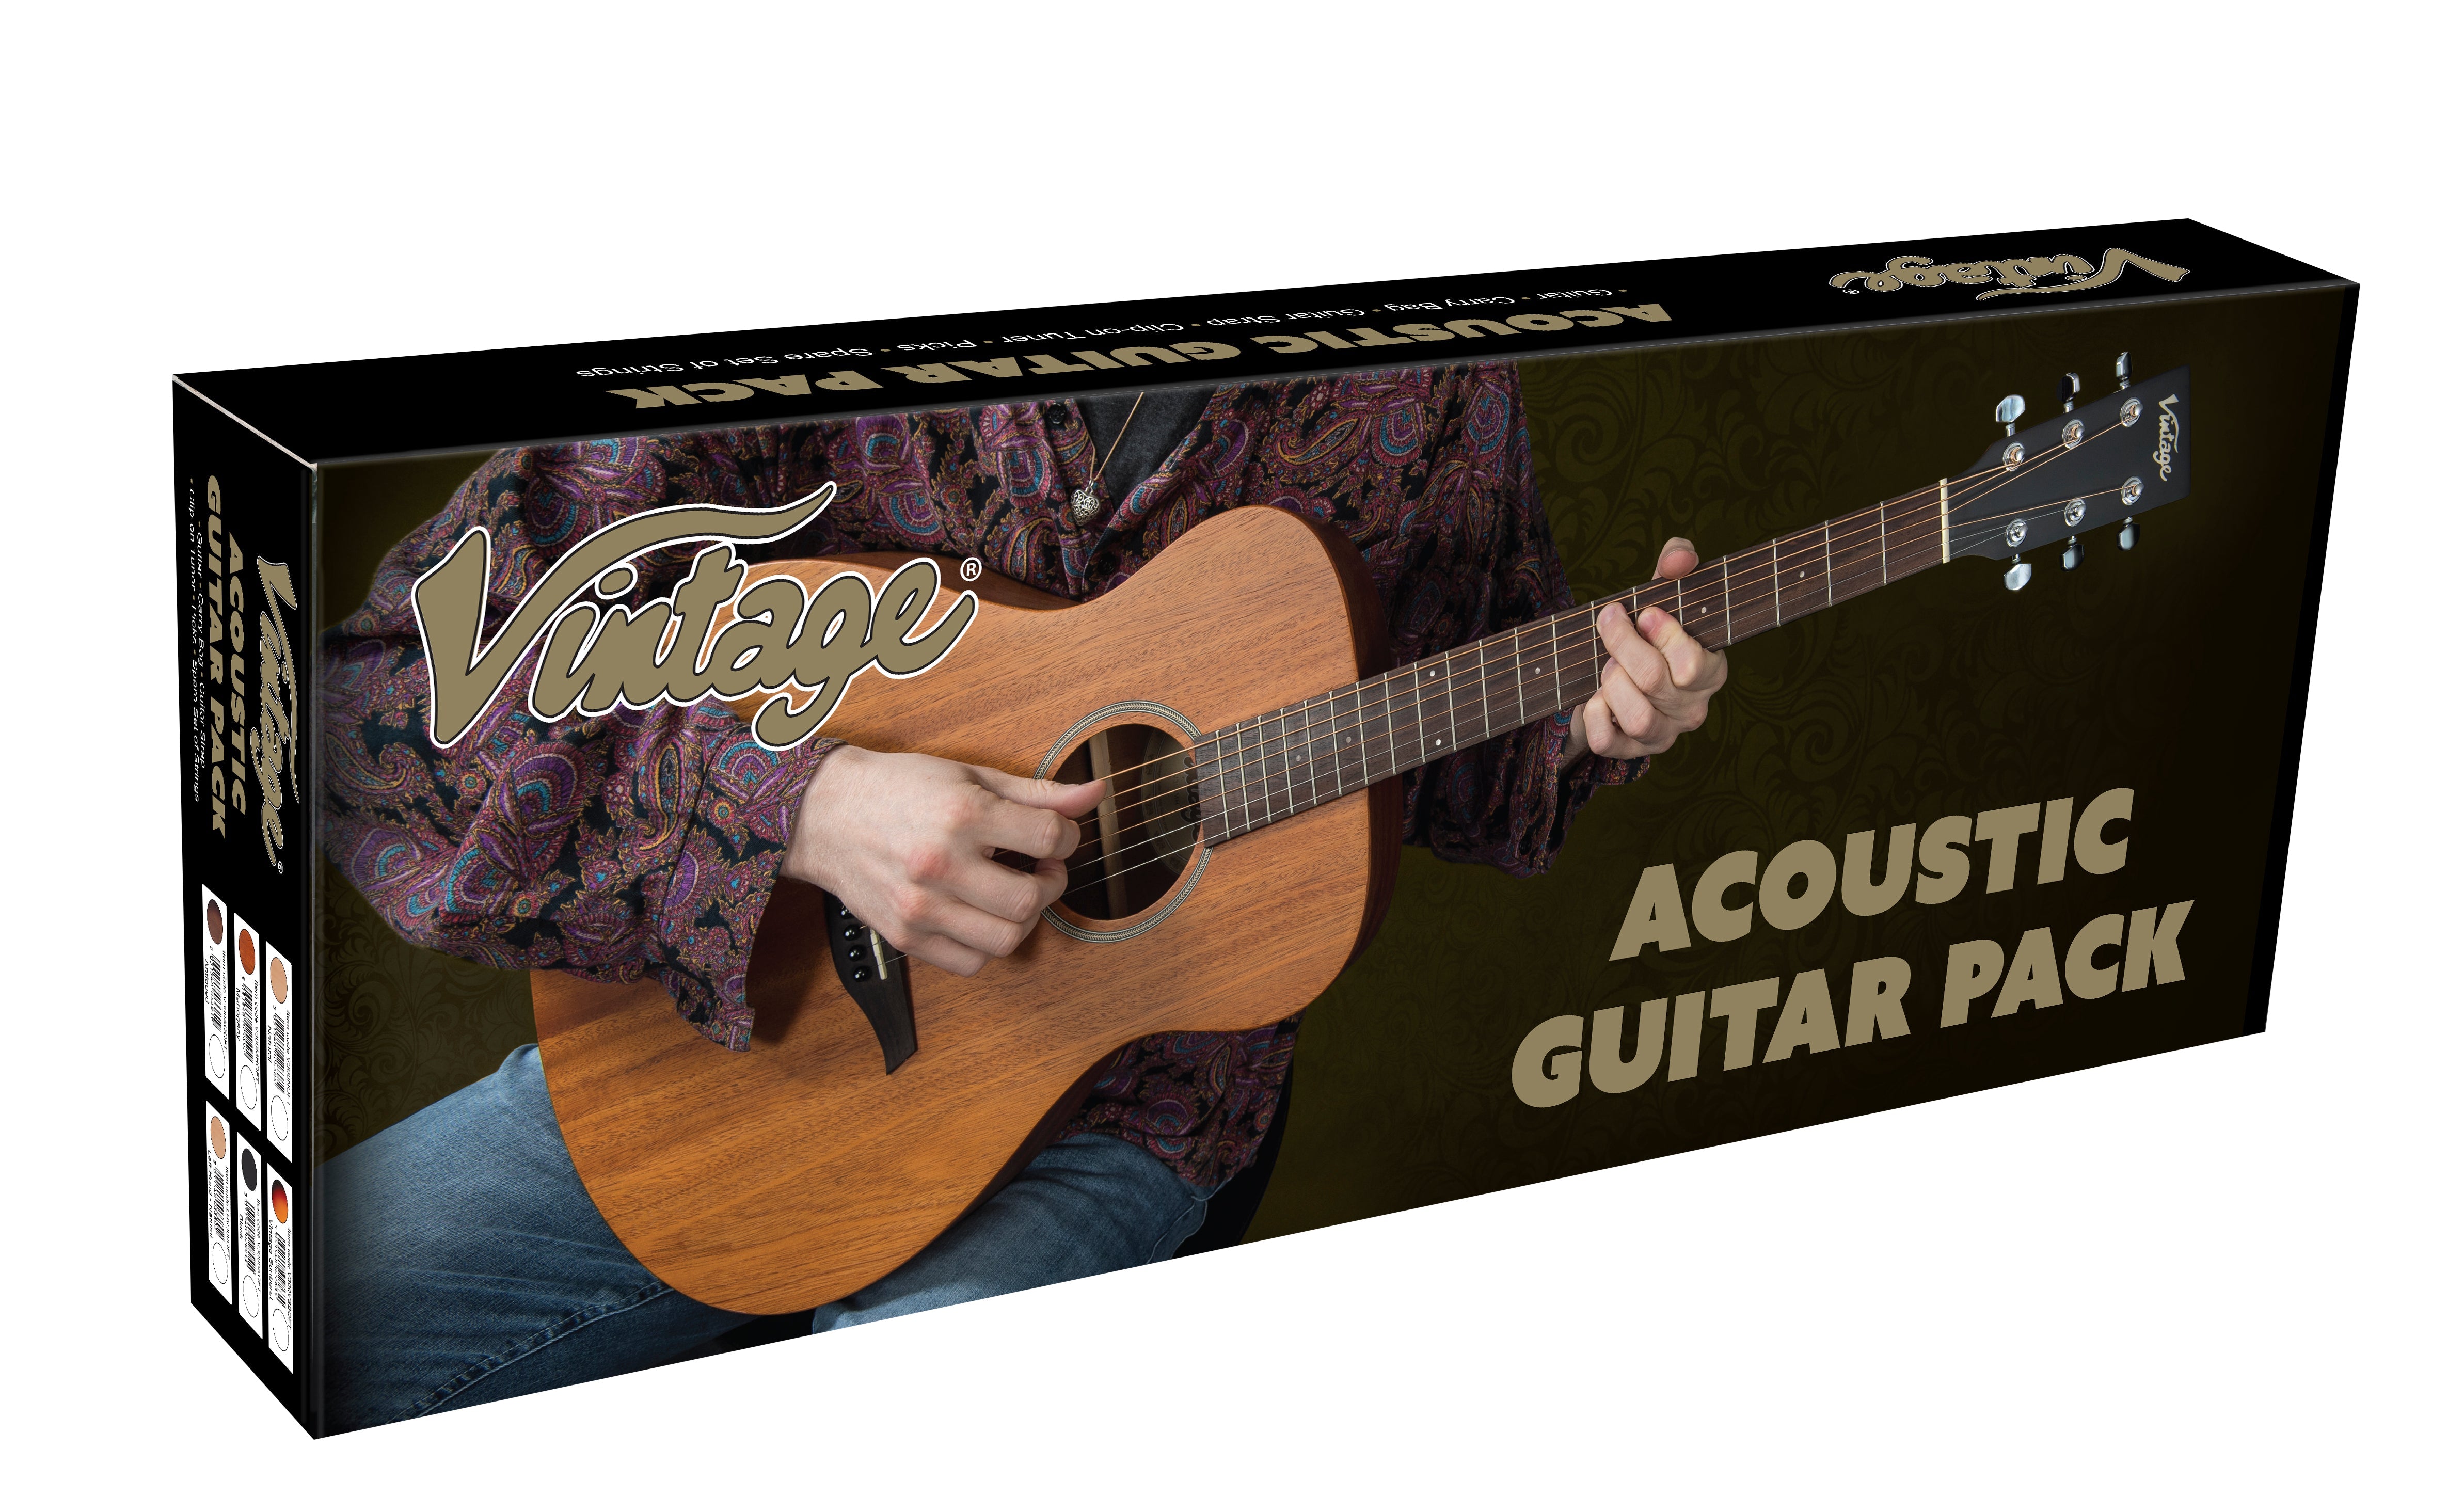 Vintage* V300NOFT Acoustic Guitar Package, Acoustic Guitar for sale at Richards Guitars.